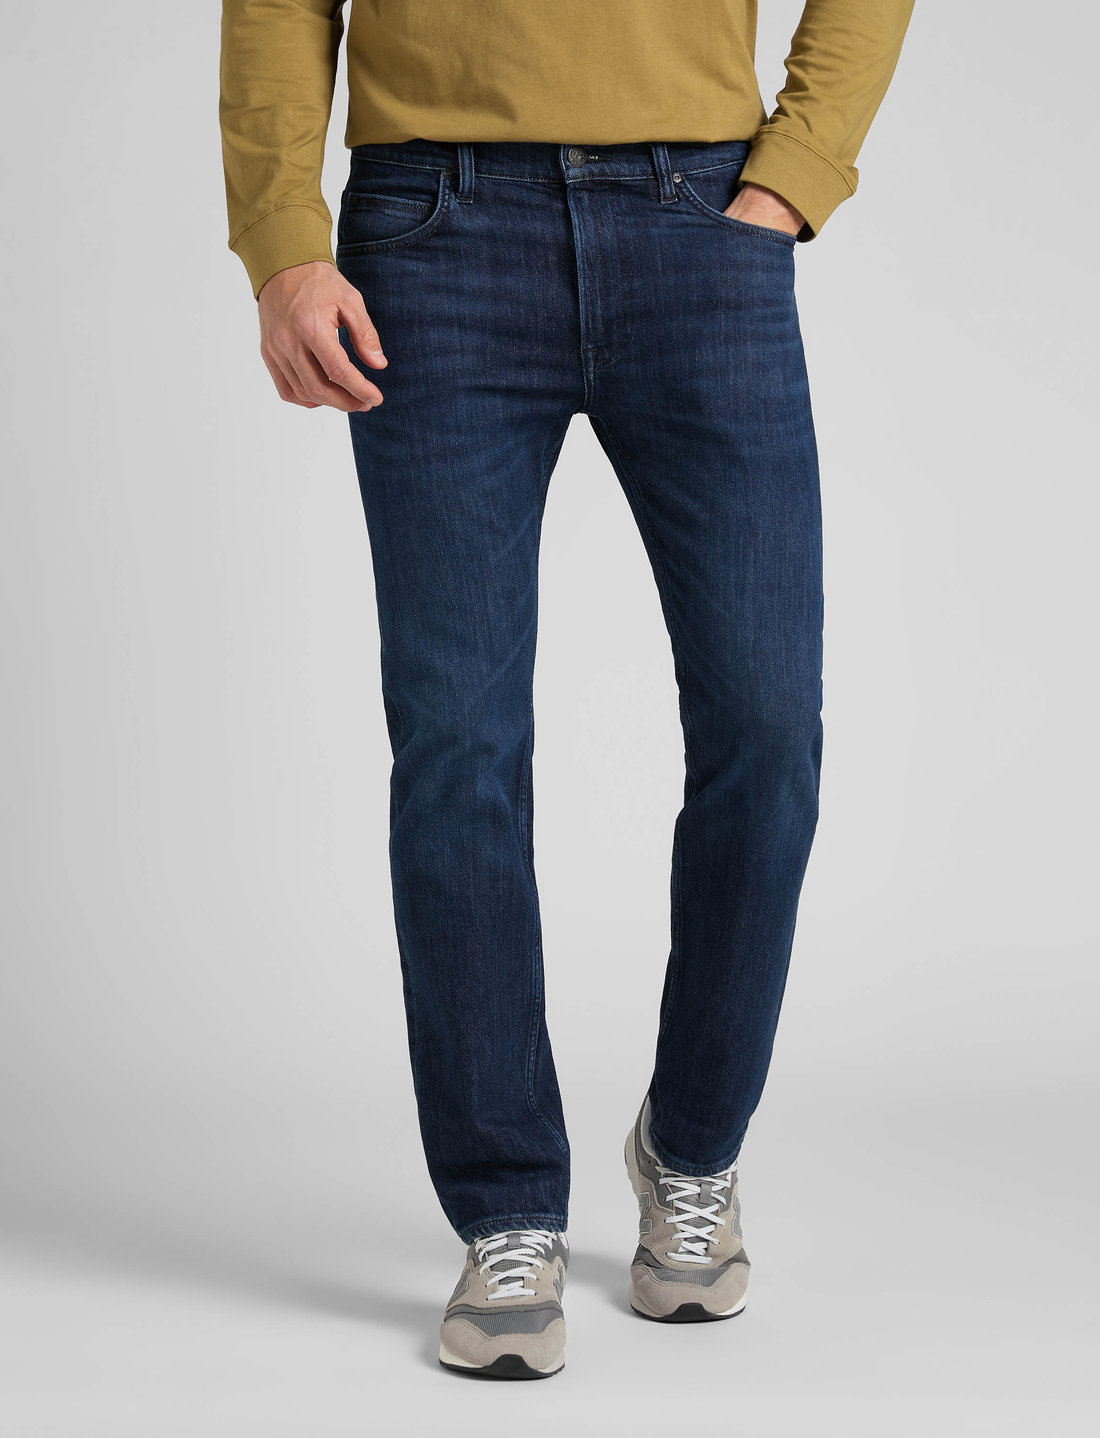 Lee Jeans Rider - Slim jeans 